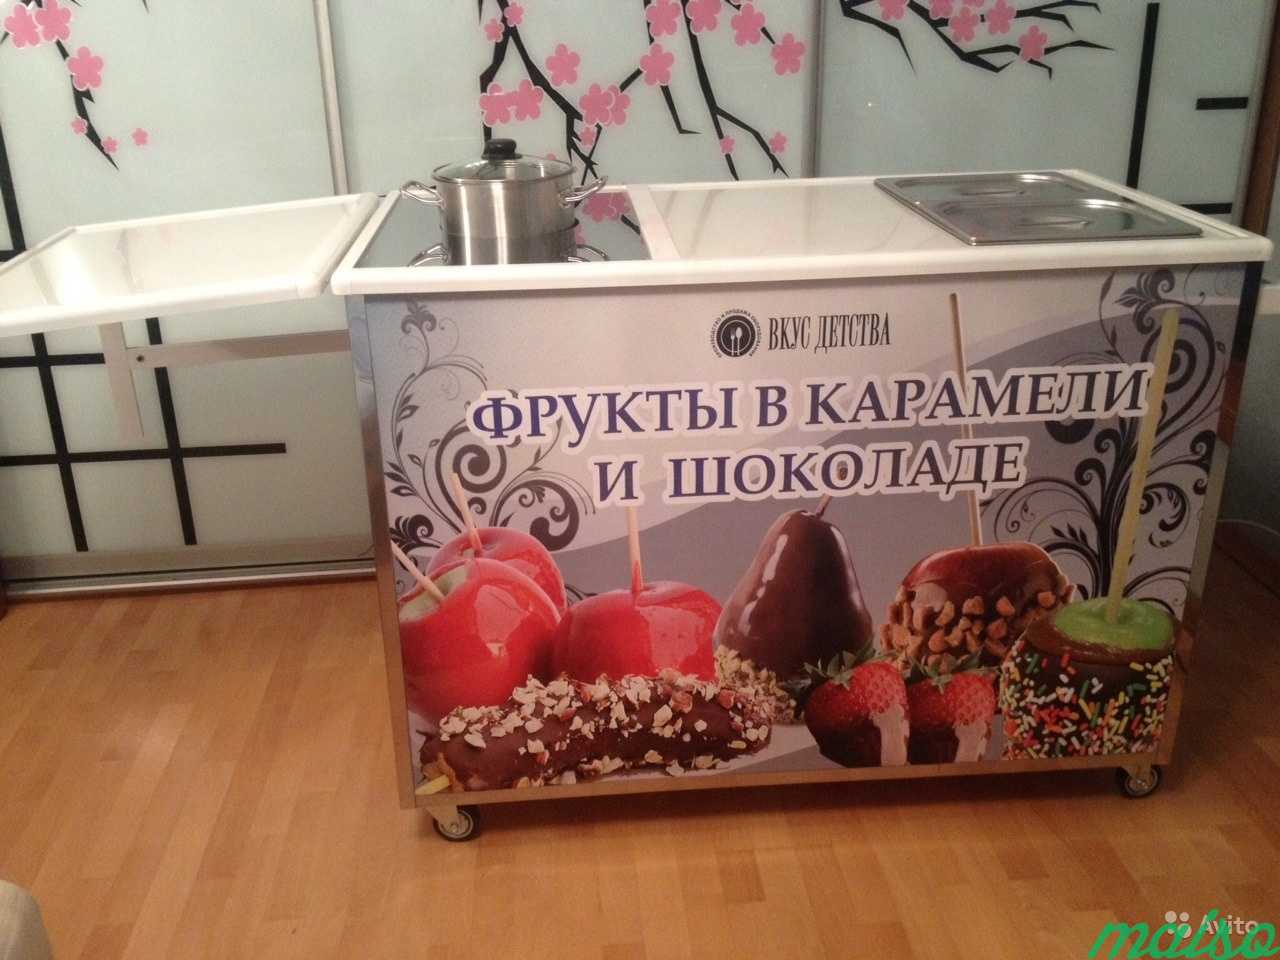 Оборудование для яблок в карамели и фруктов в шоко в Москве. Фото 3